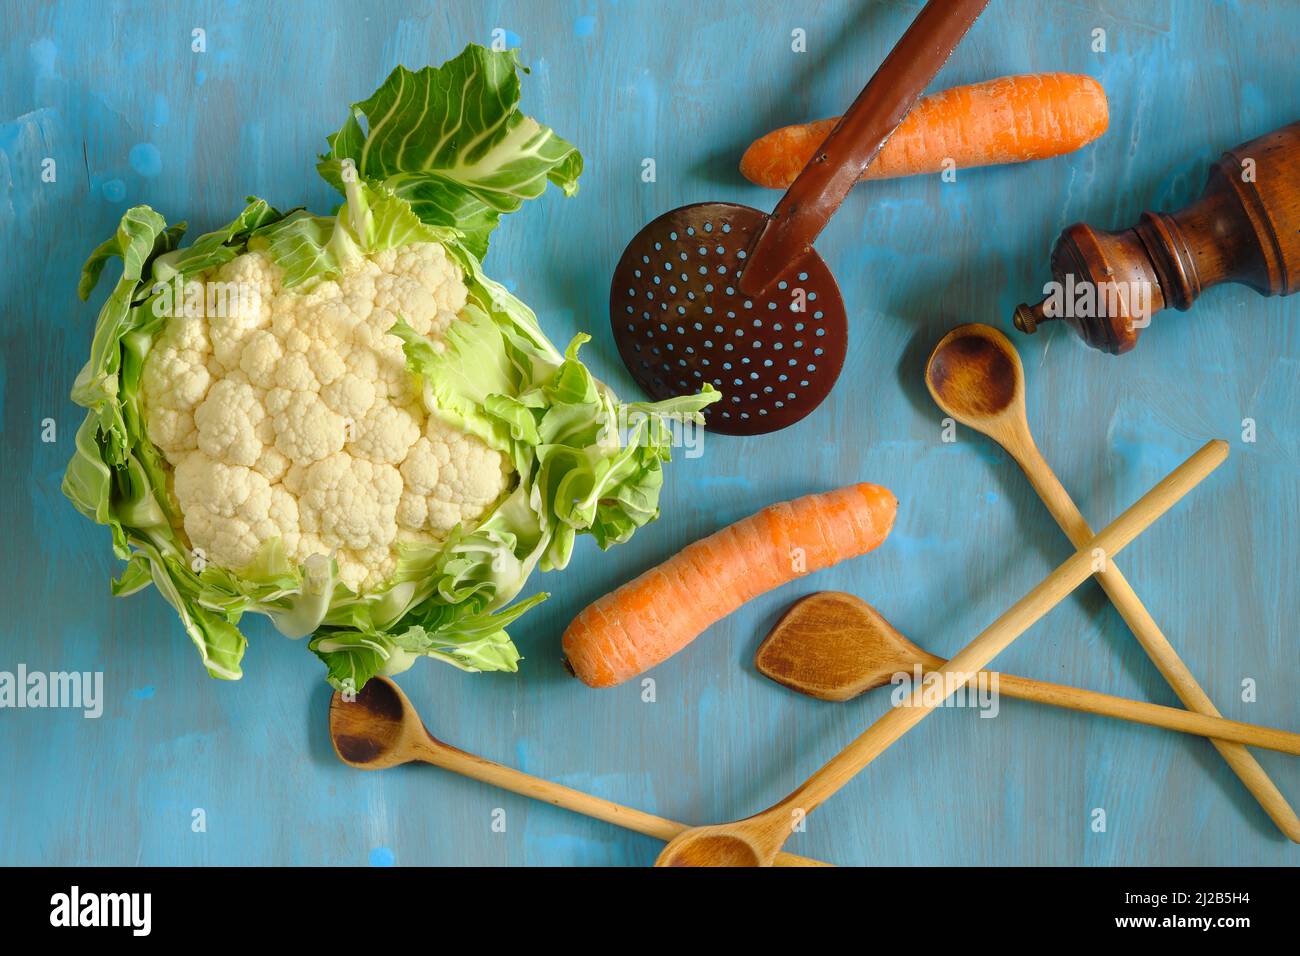 Piatto con cavolfiore fresco, cucchiai di legno e carote.sano mangiare, dieta, concetto di cibo vegano. Foto Stock